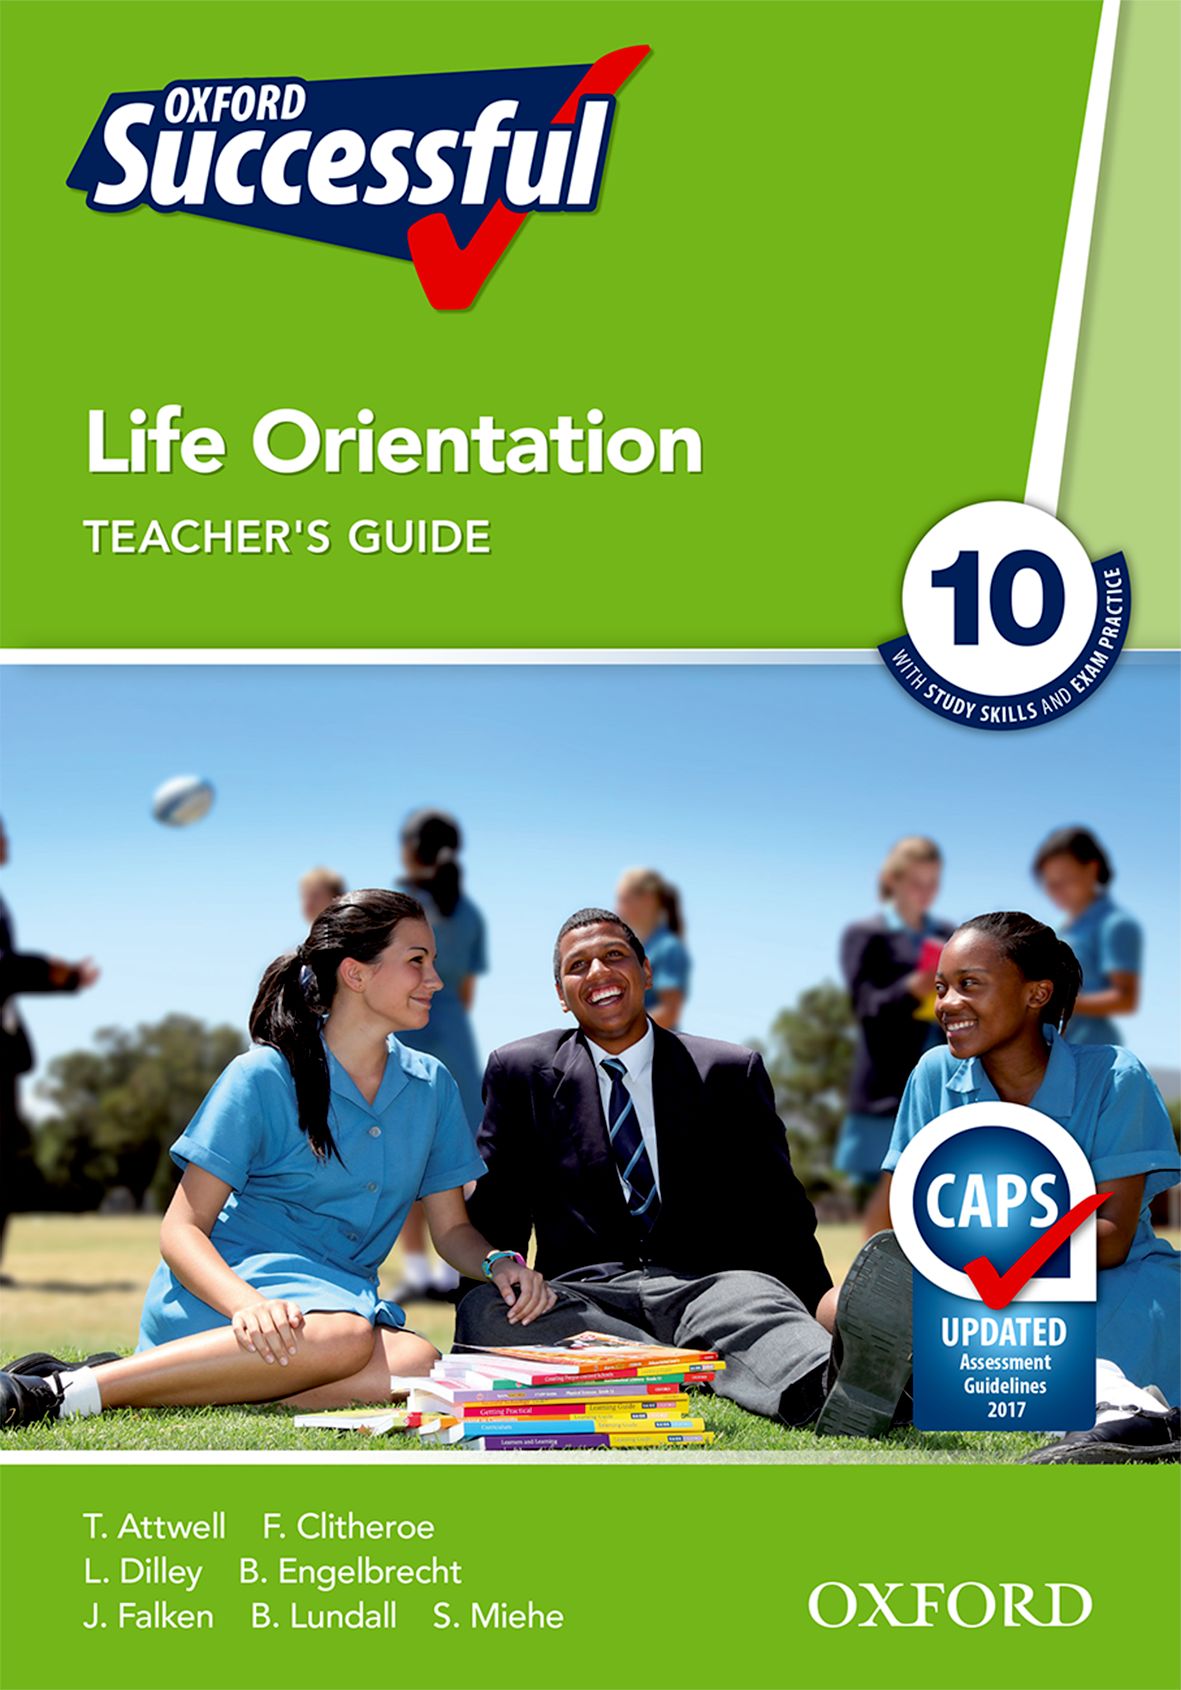 Life orientation teacher jobs in gauteng